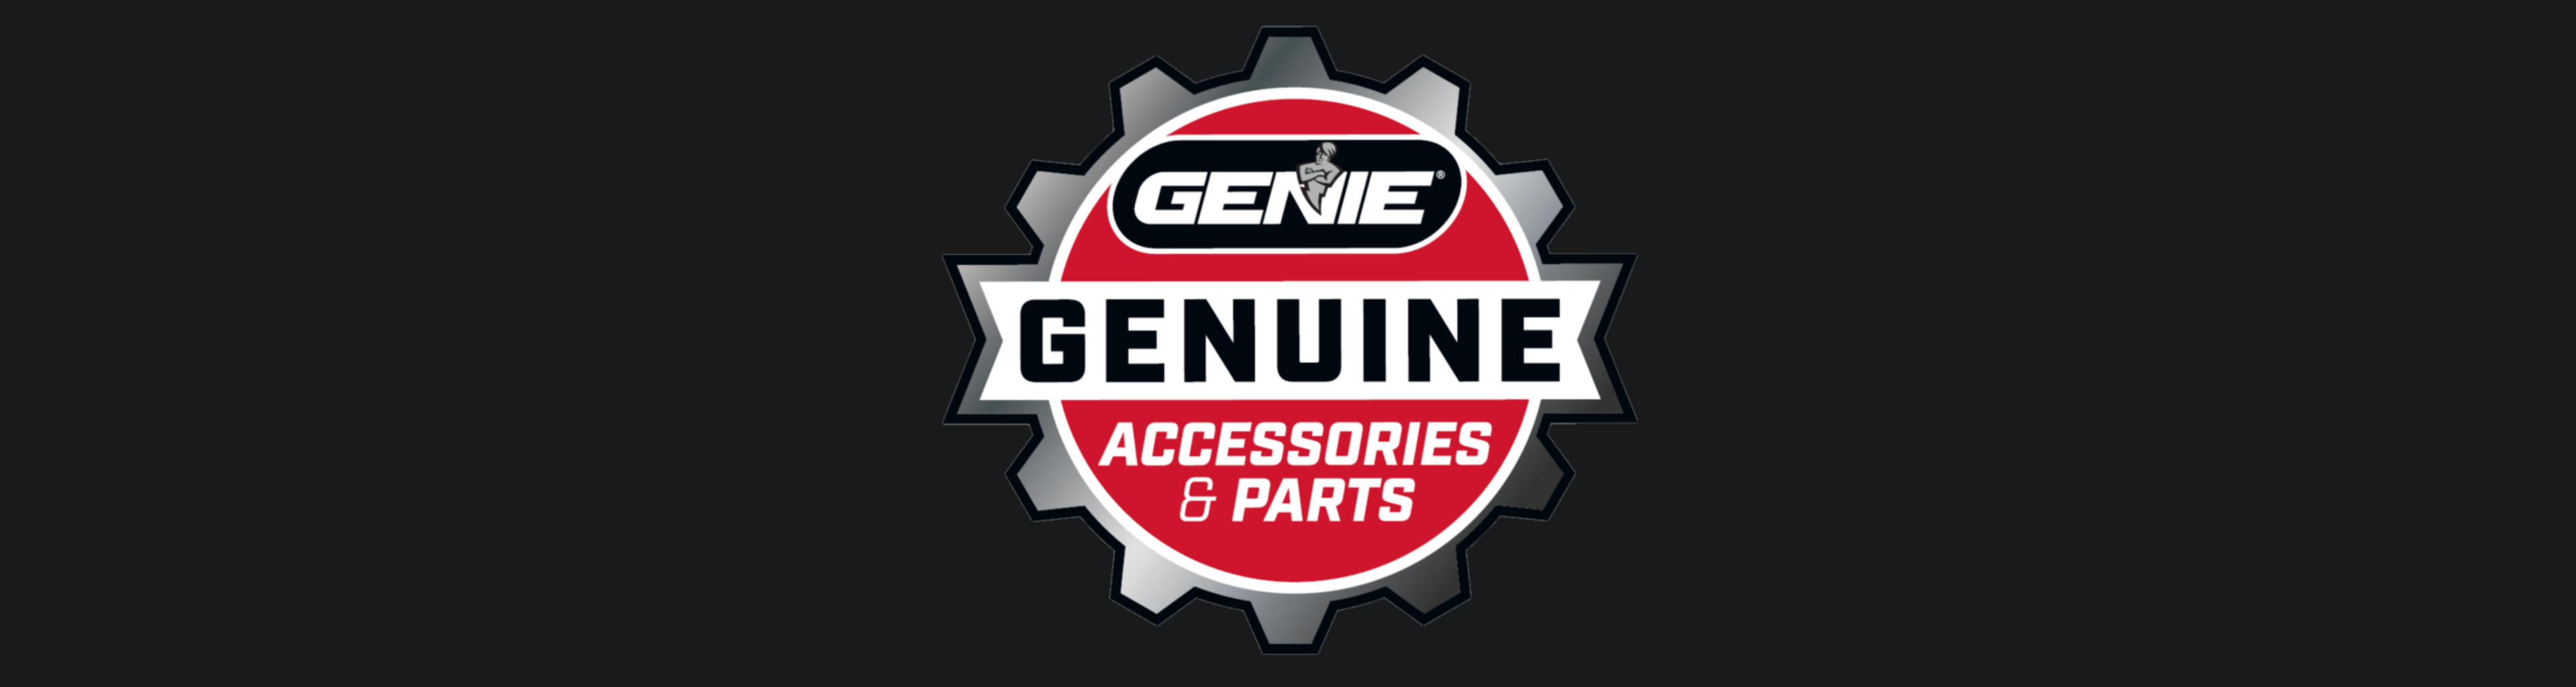 Genie Genuine Accessories and Parts